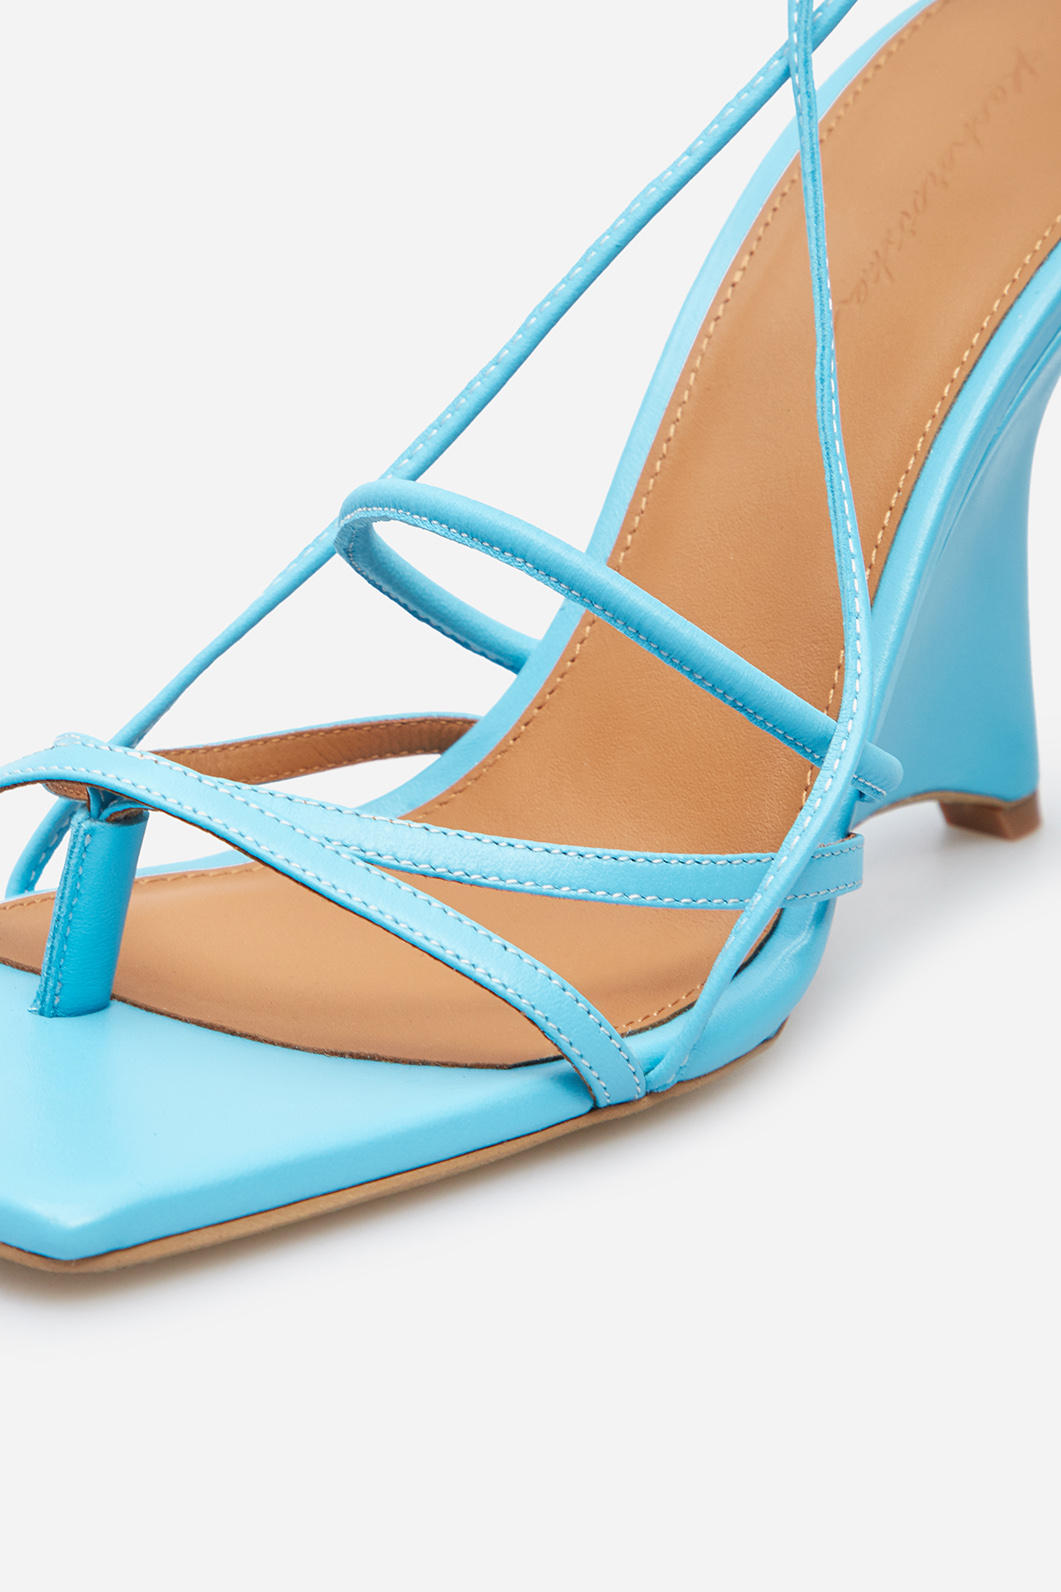 Liv blue leather sandals /9 cm/